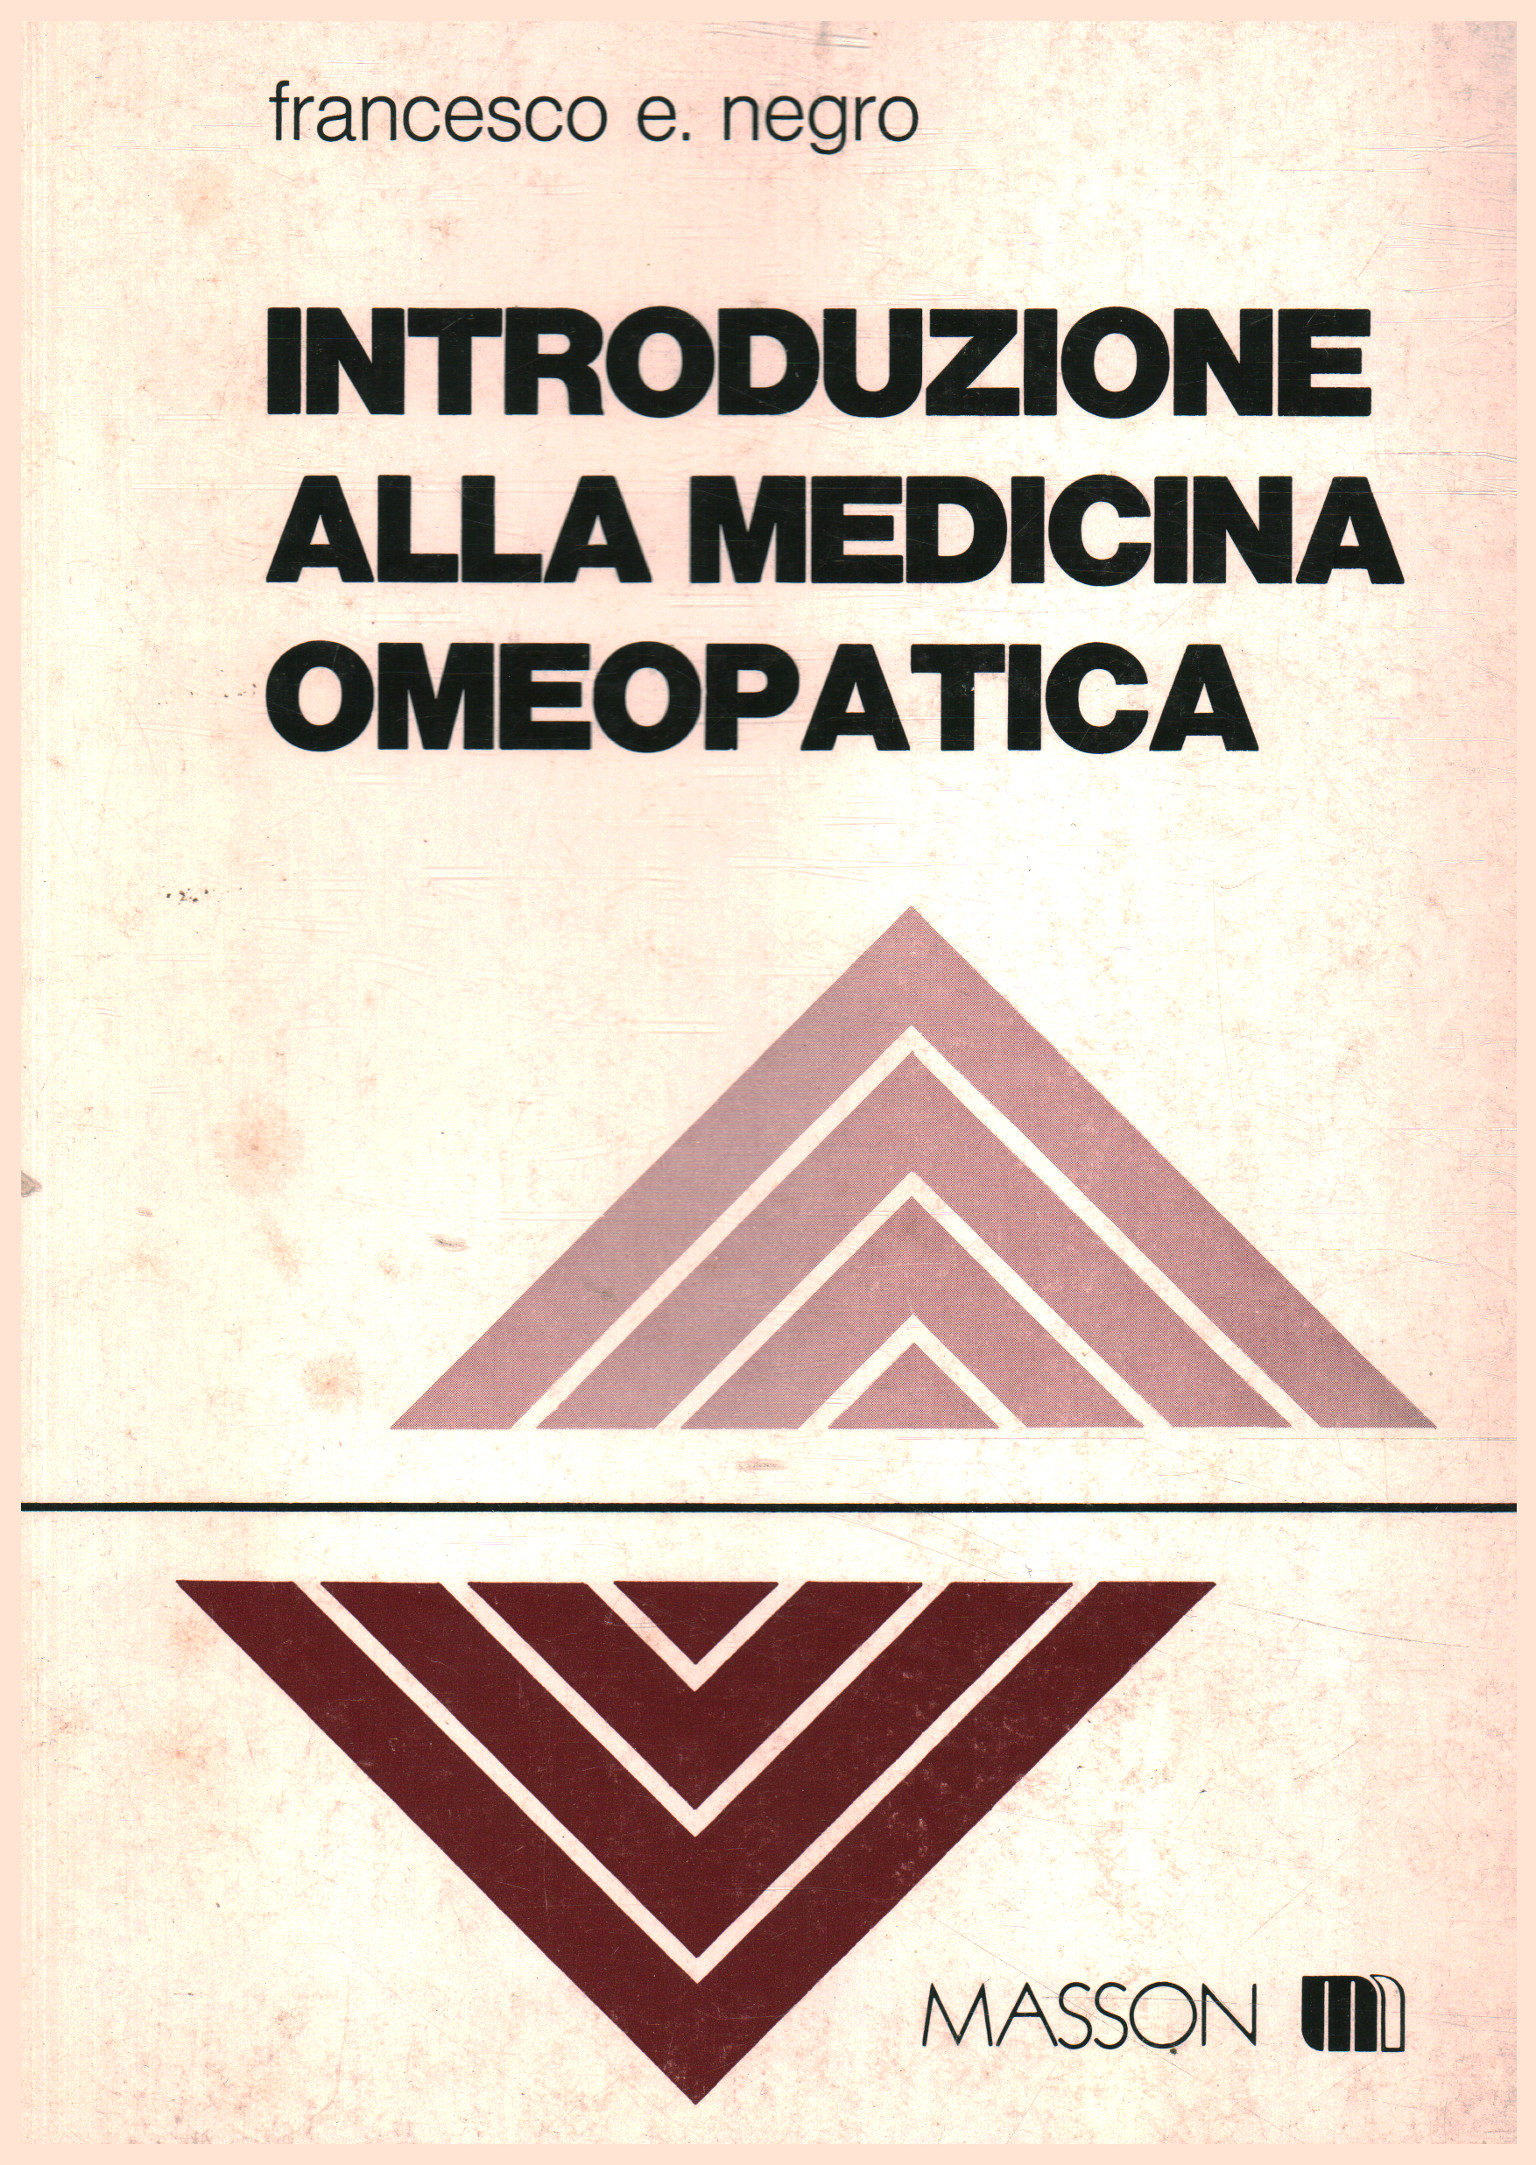 Einführung in die homöopathische Medizin, Francesco E. Negro